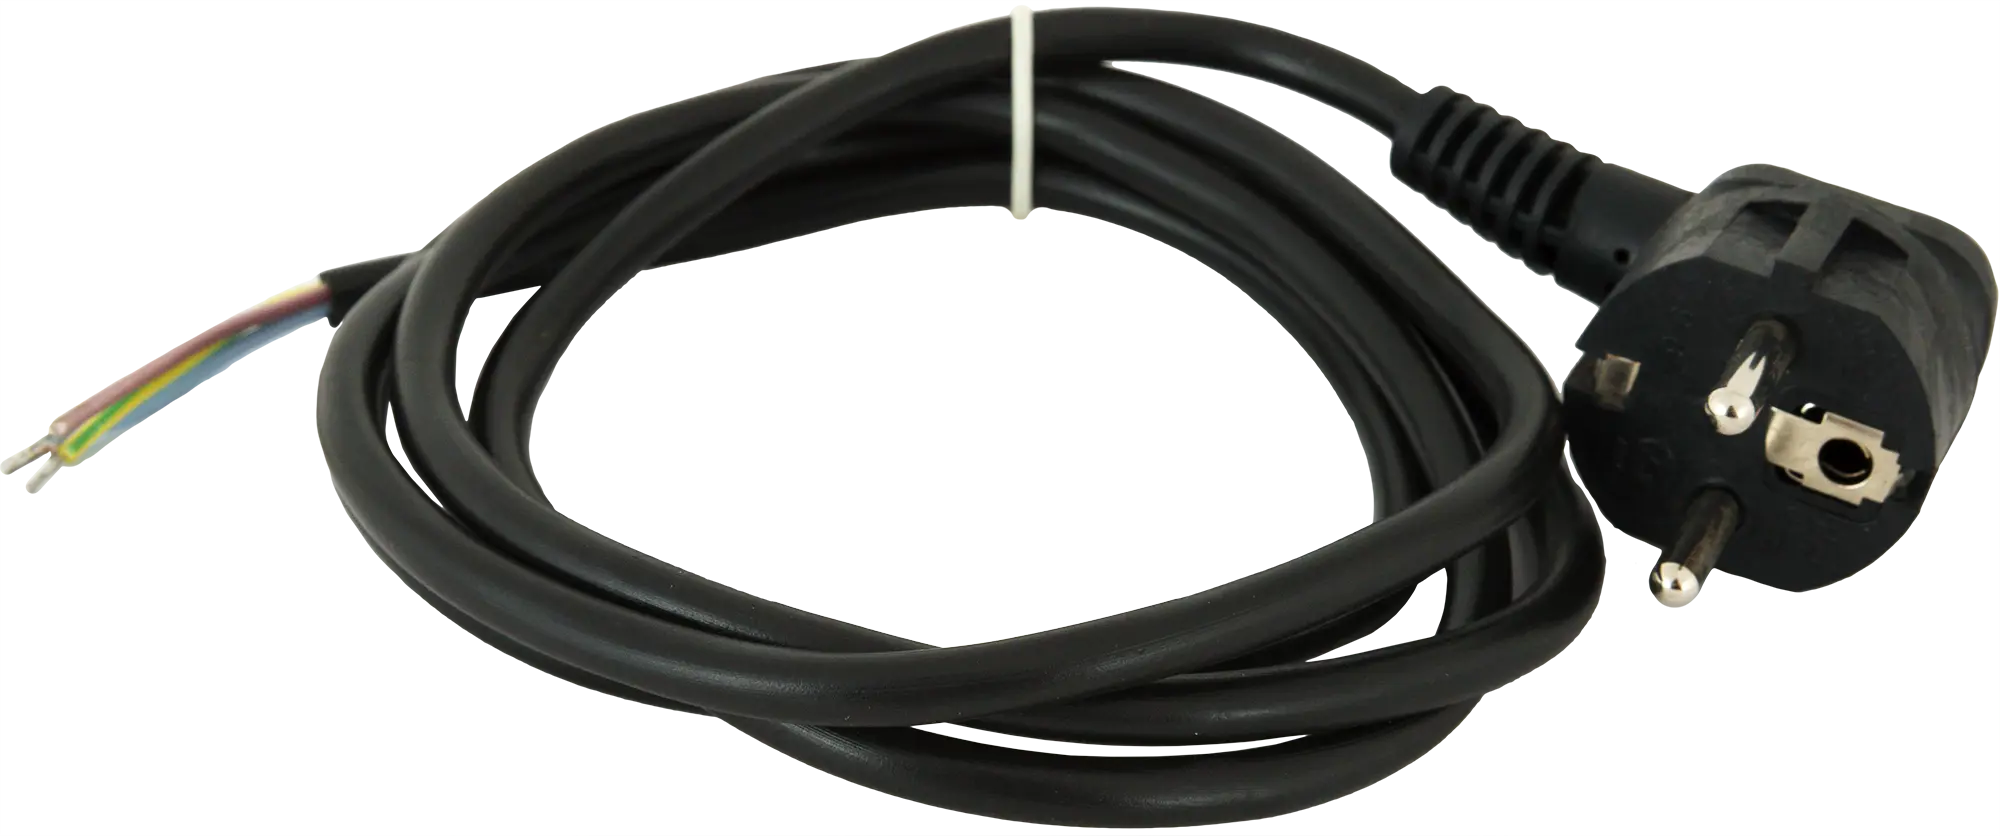 Шнур сетевой с заземлением 16 A 1.5 м цвет чёрный шнур сетевой с заземлением 16 a 1 5 м чёрный